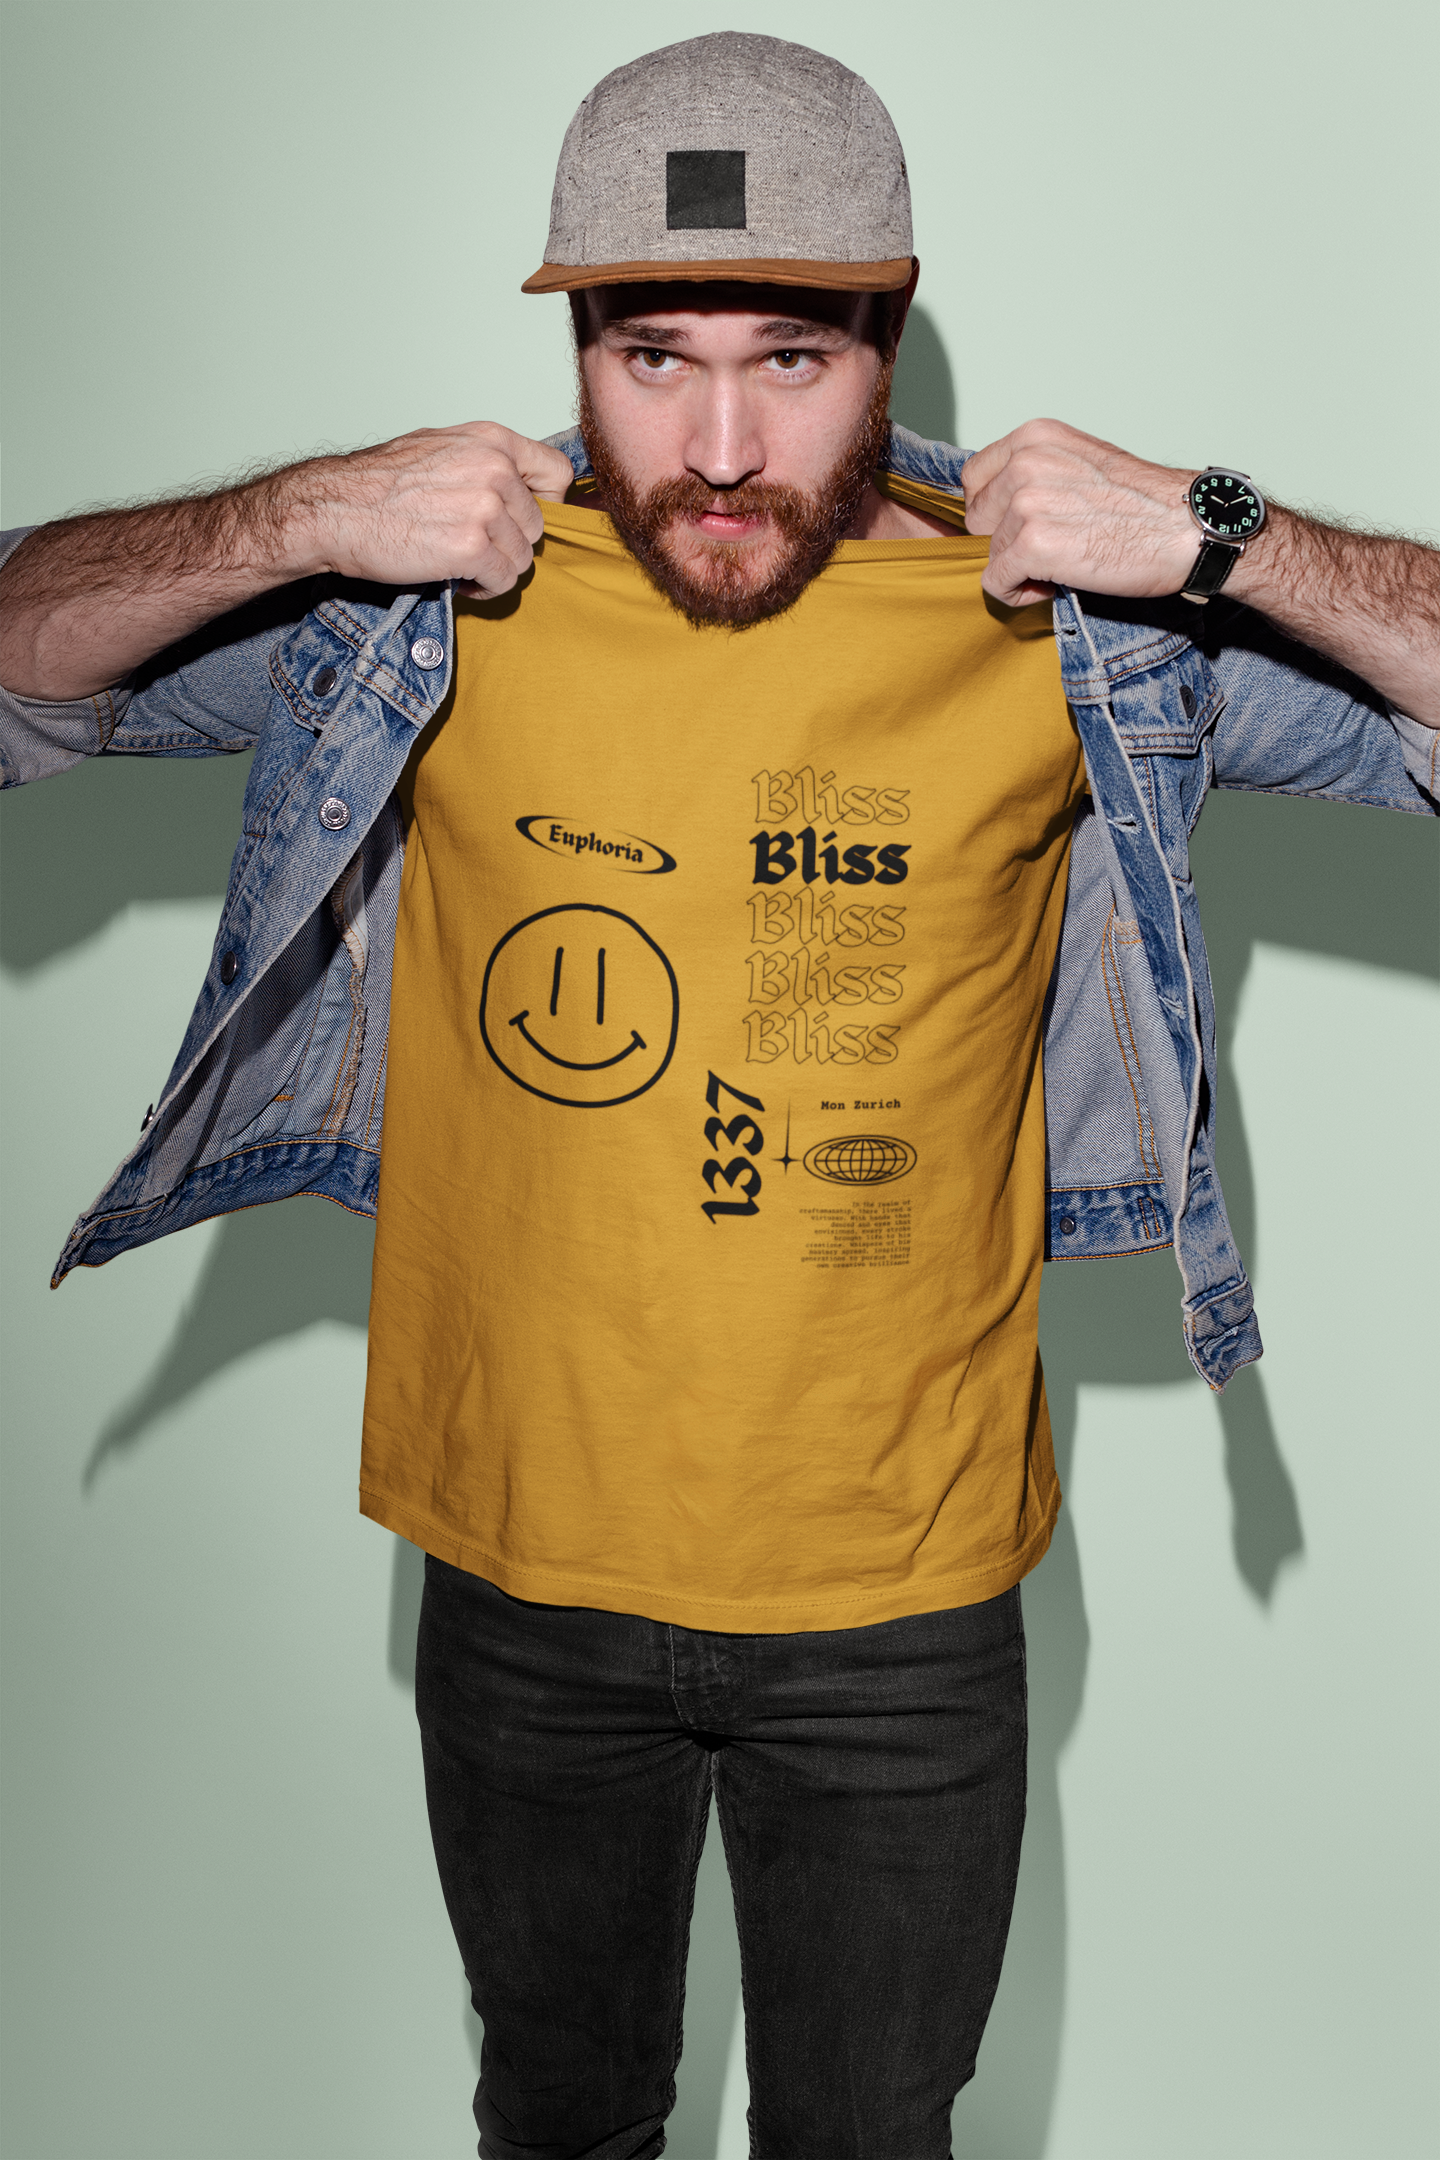 Bliss T-Shirt In Light - Mon Zurich Originals